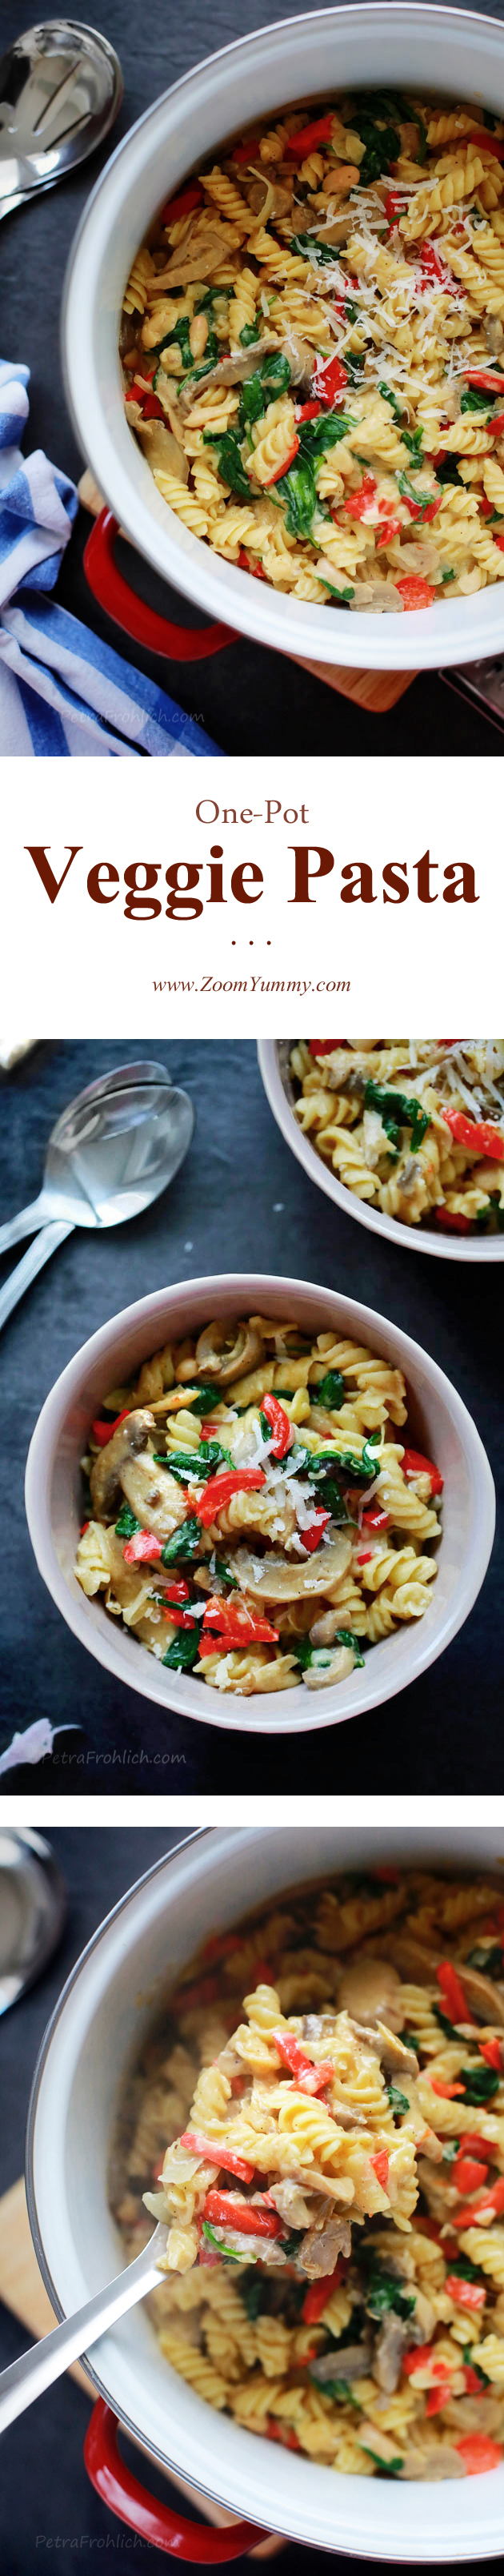 one-pot-veggie-pasta-recipe